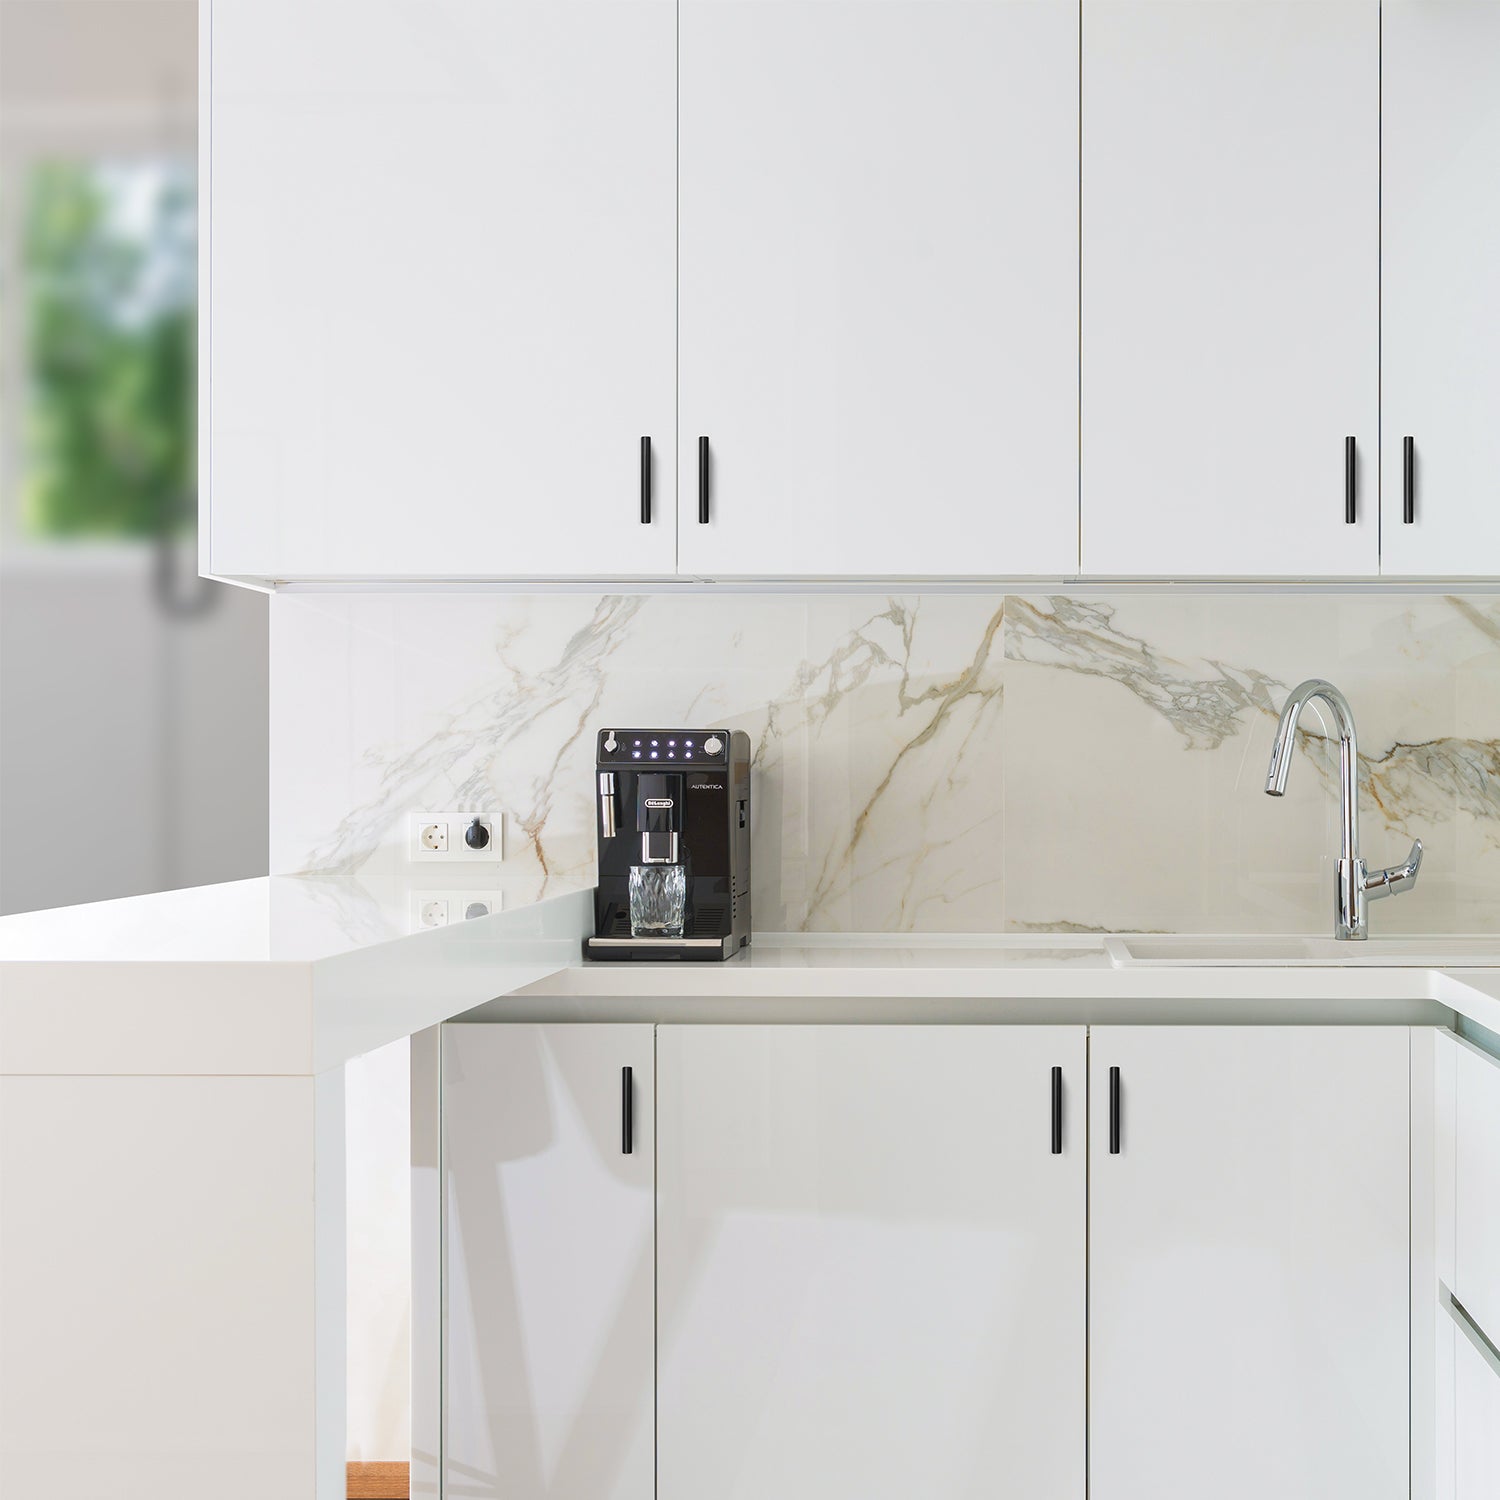 Ravinte Cabinet Pulls Matte Black Stainless Steel Kitchen Drawer Pulls Cupboard Pulls Cabinet Handles